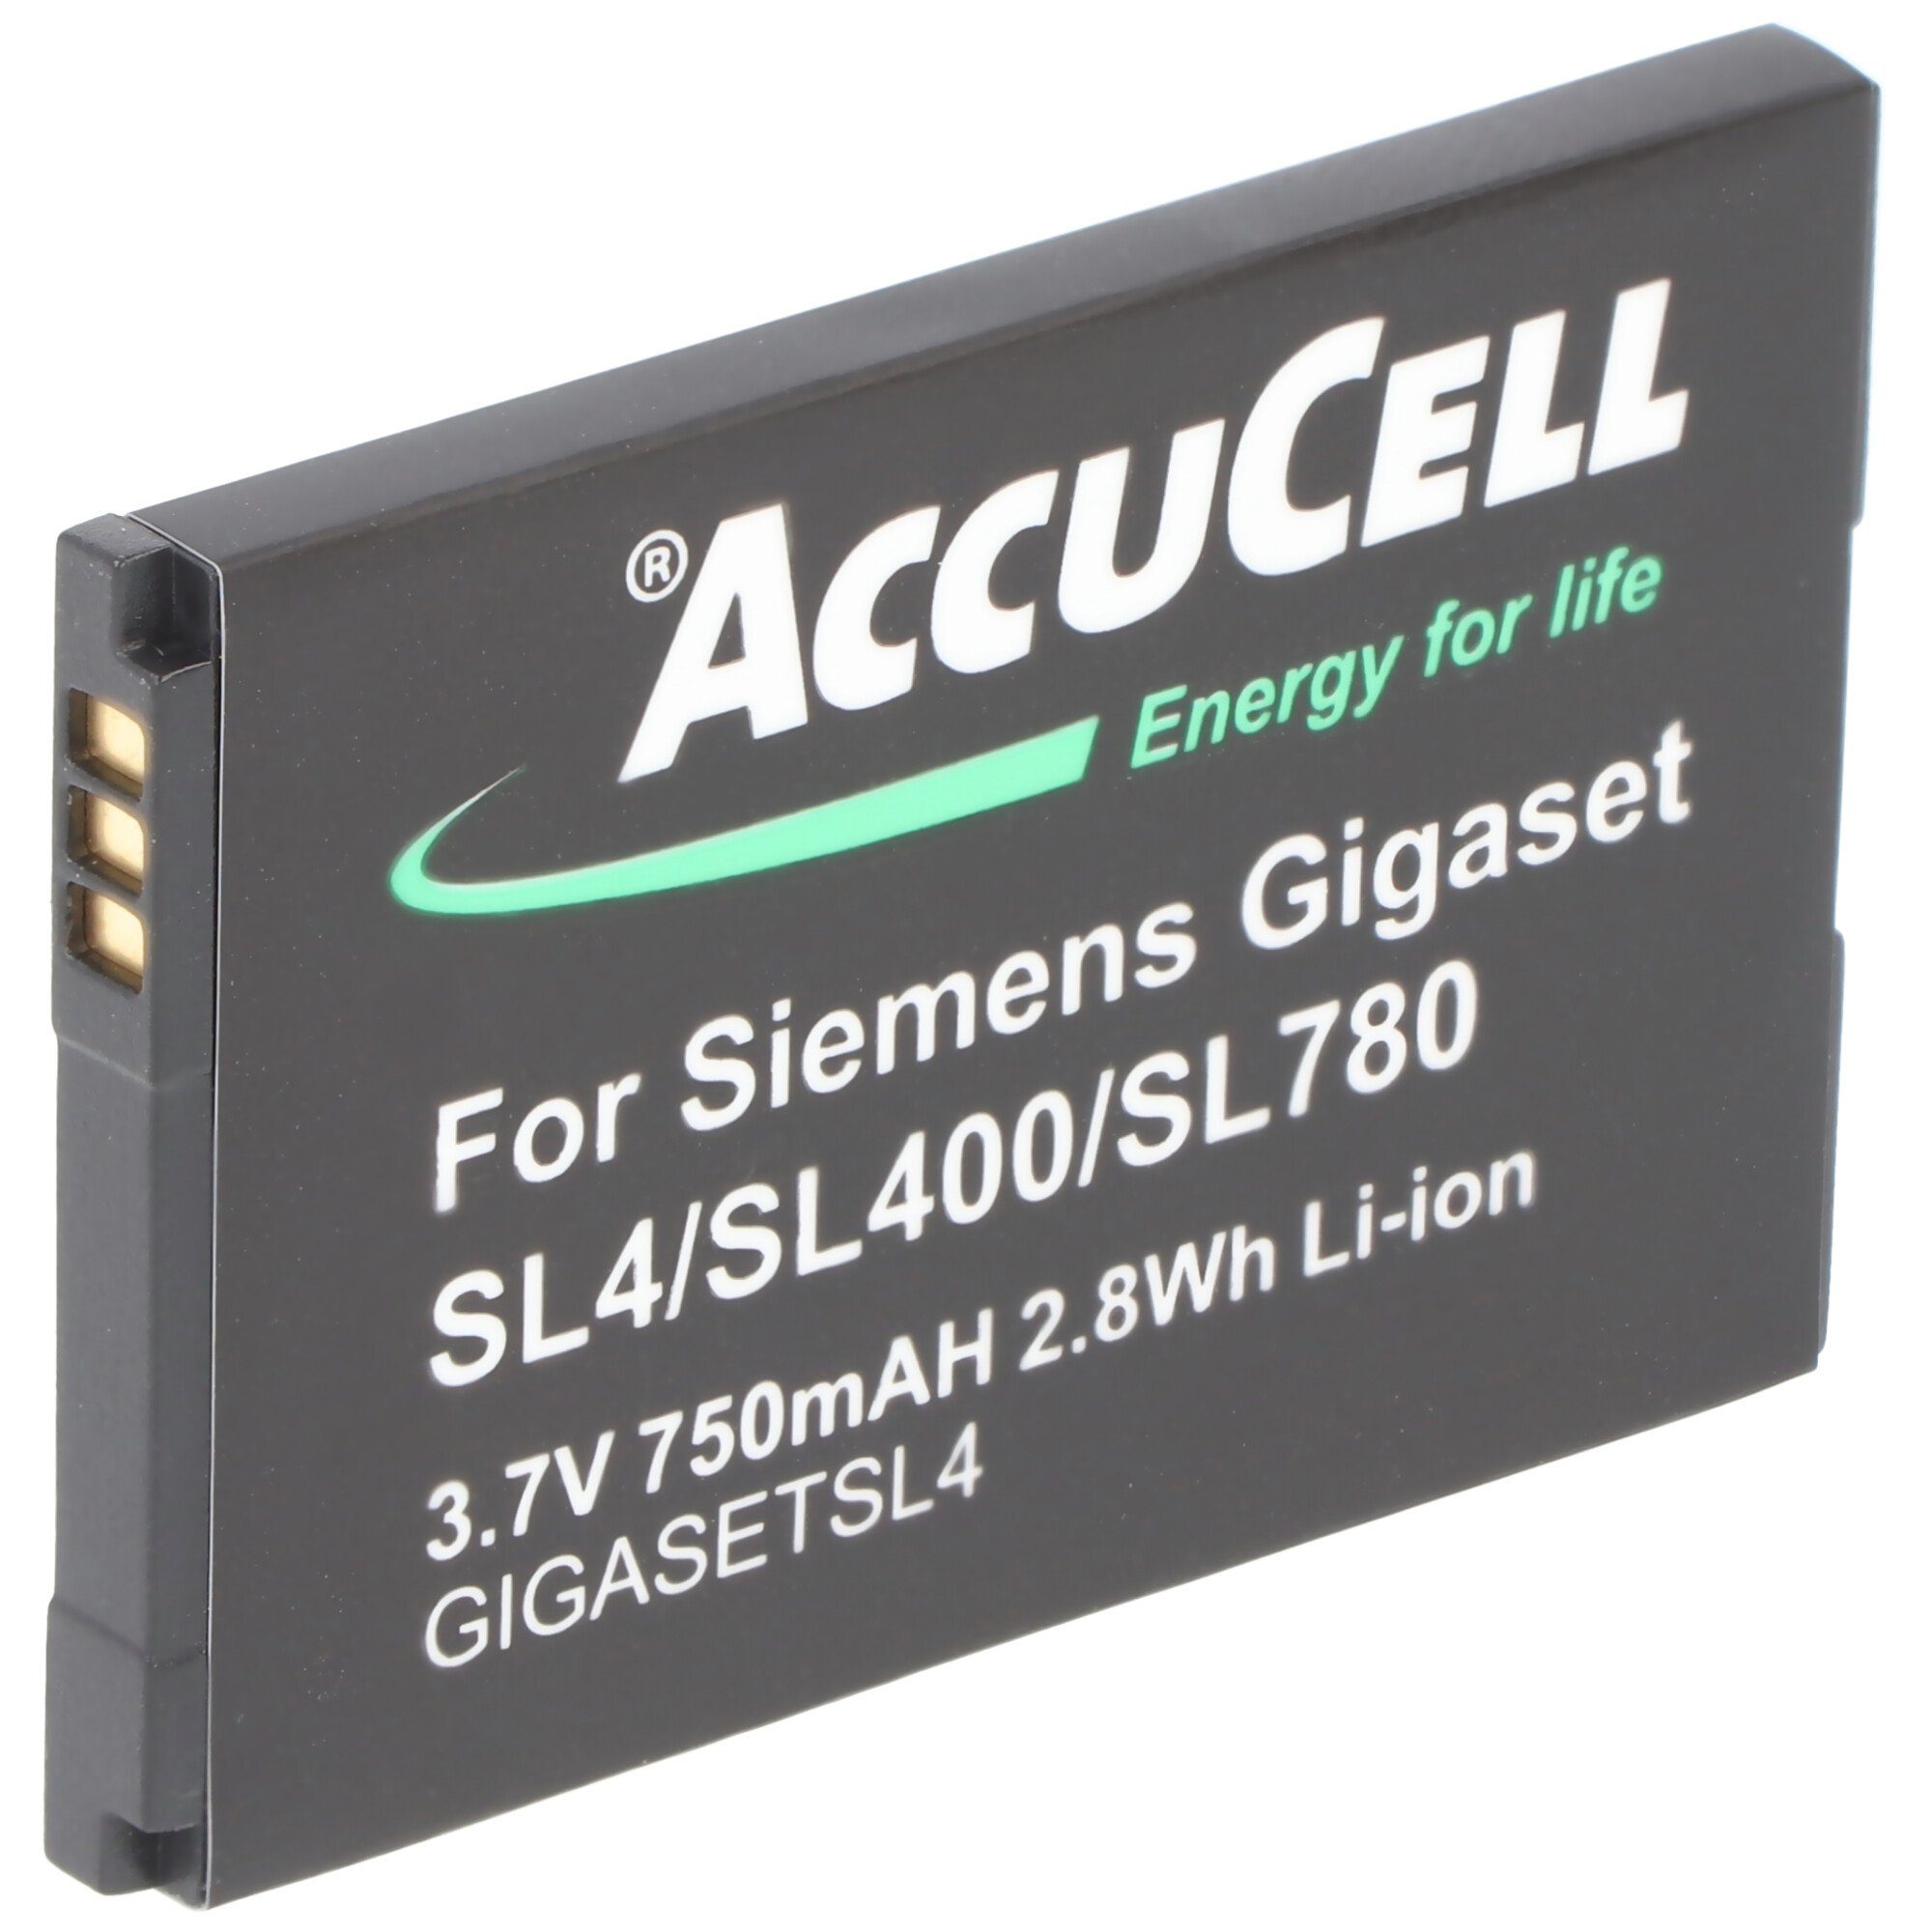 AccuCell Akku (3,7 V) Akku Siemens Gigaset V30145-K1310K-X444, mAh 700 passend V30145-K1310-X44 für